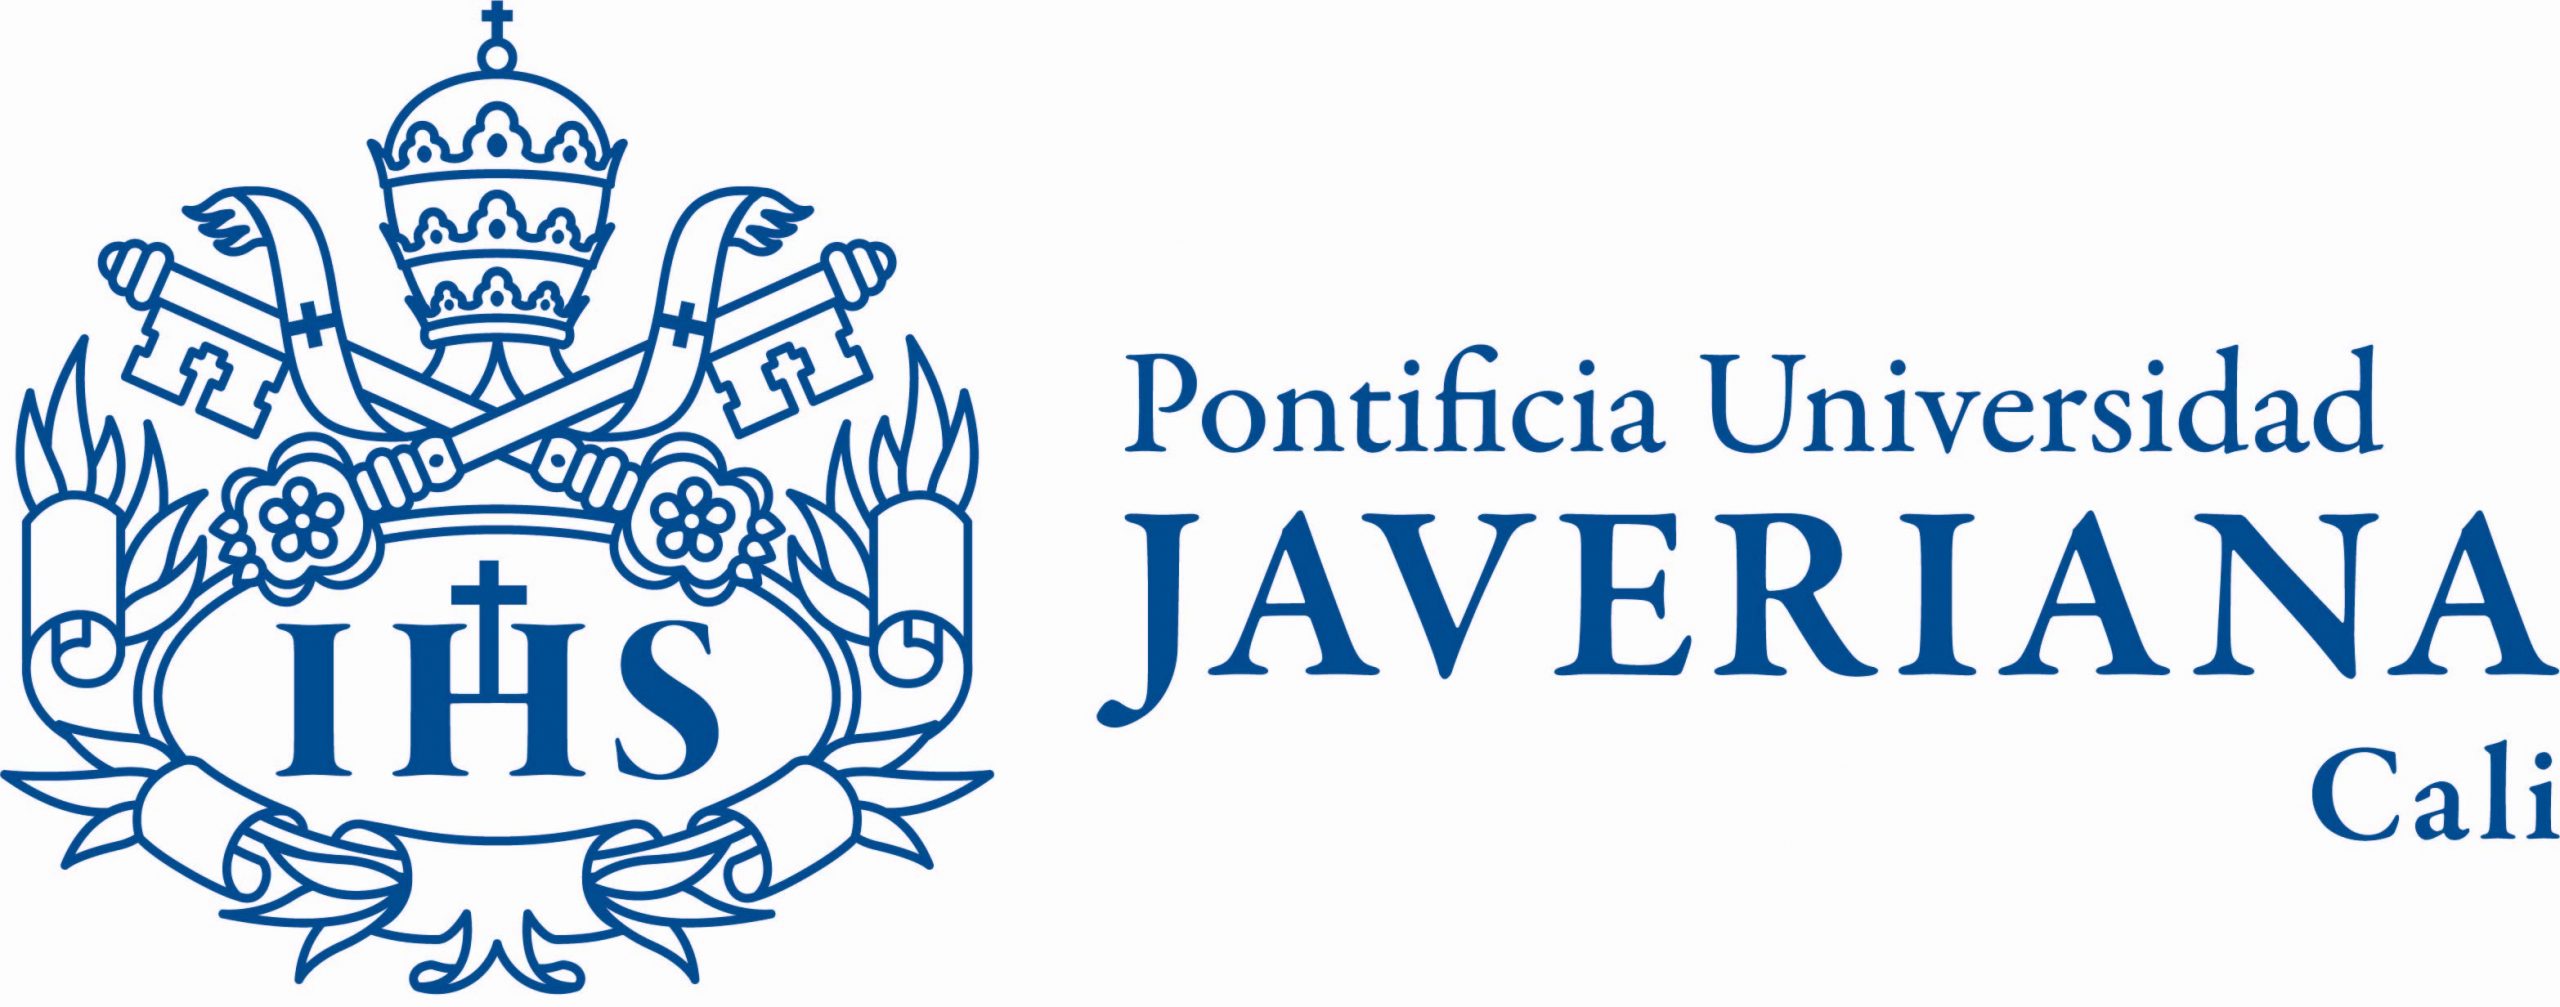 En este momento estás viendo Pontificia Universidad Javeriana